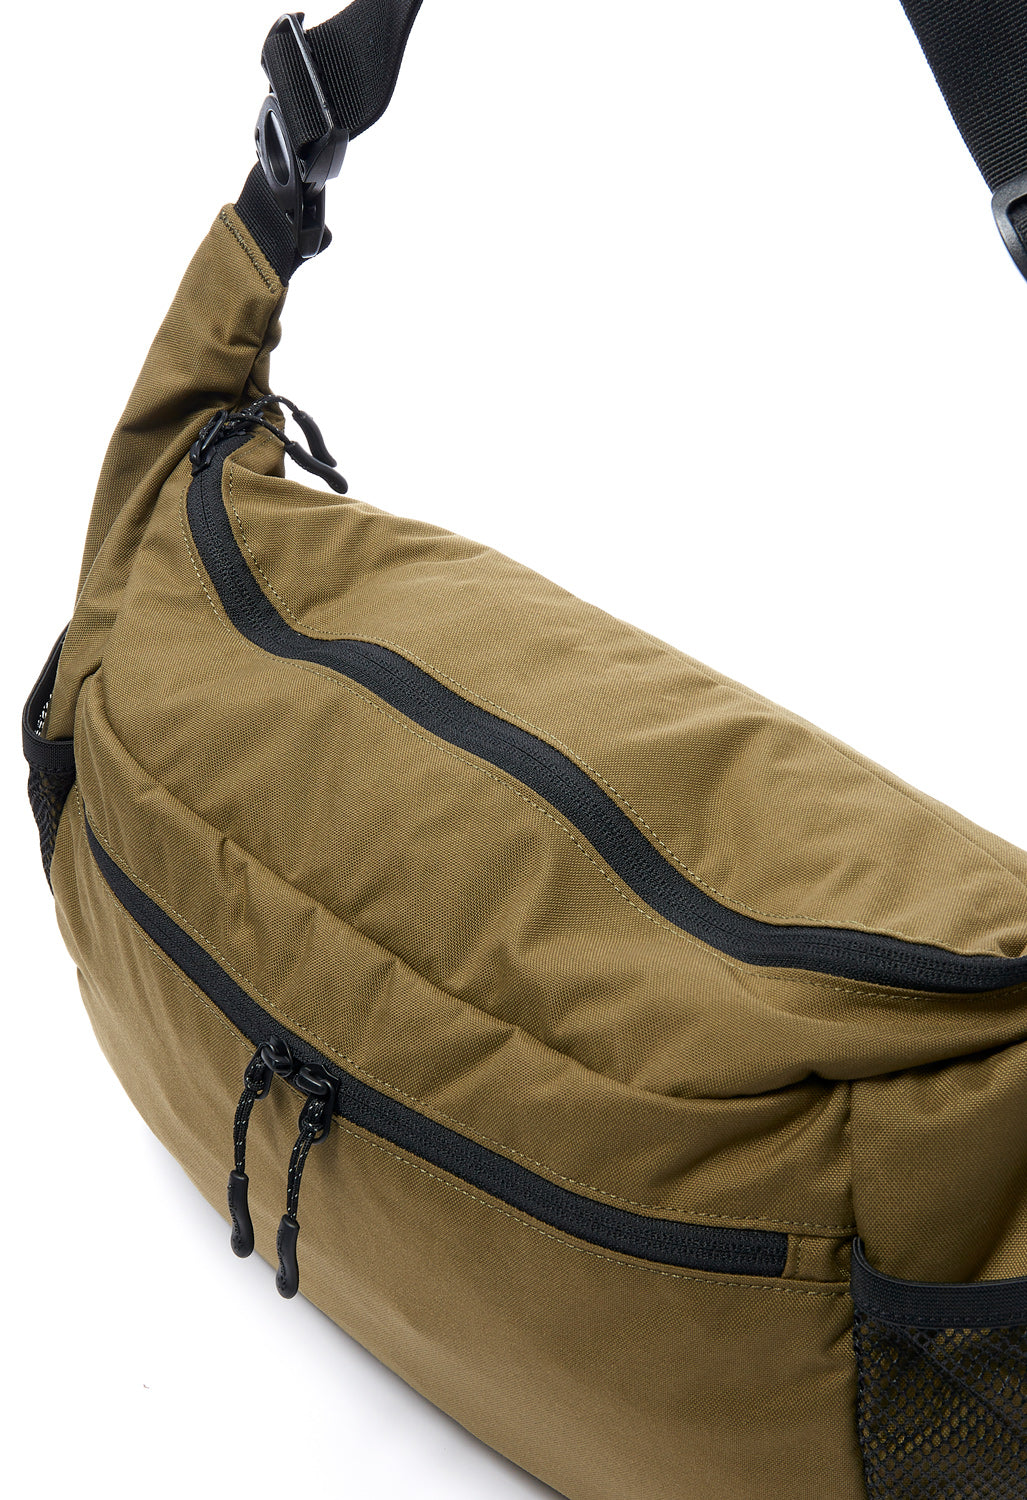 Snow Peak Everyday Use Middle Shoulder Bag